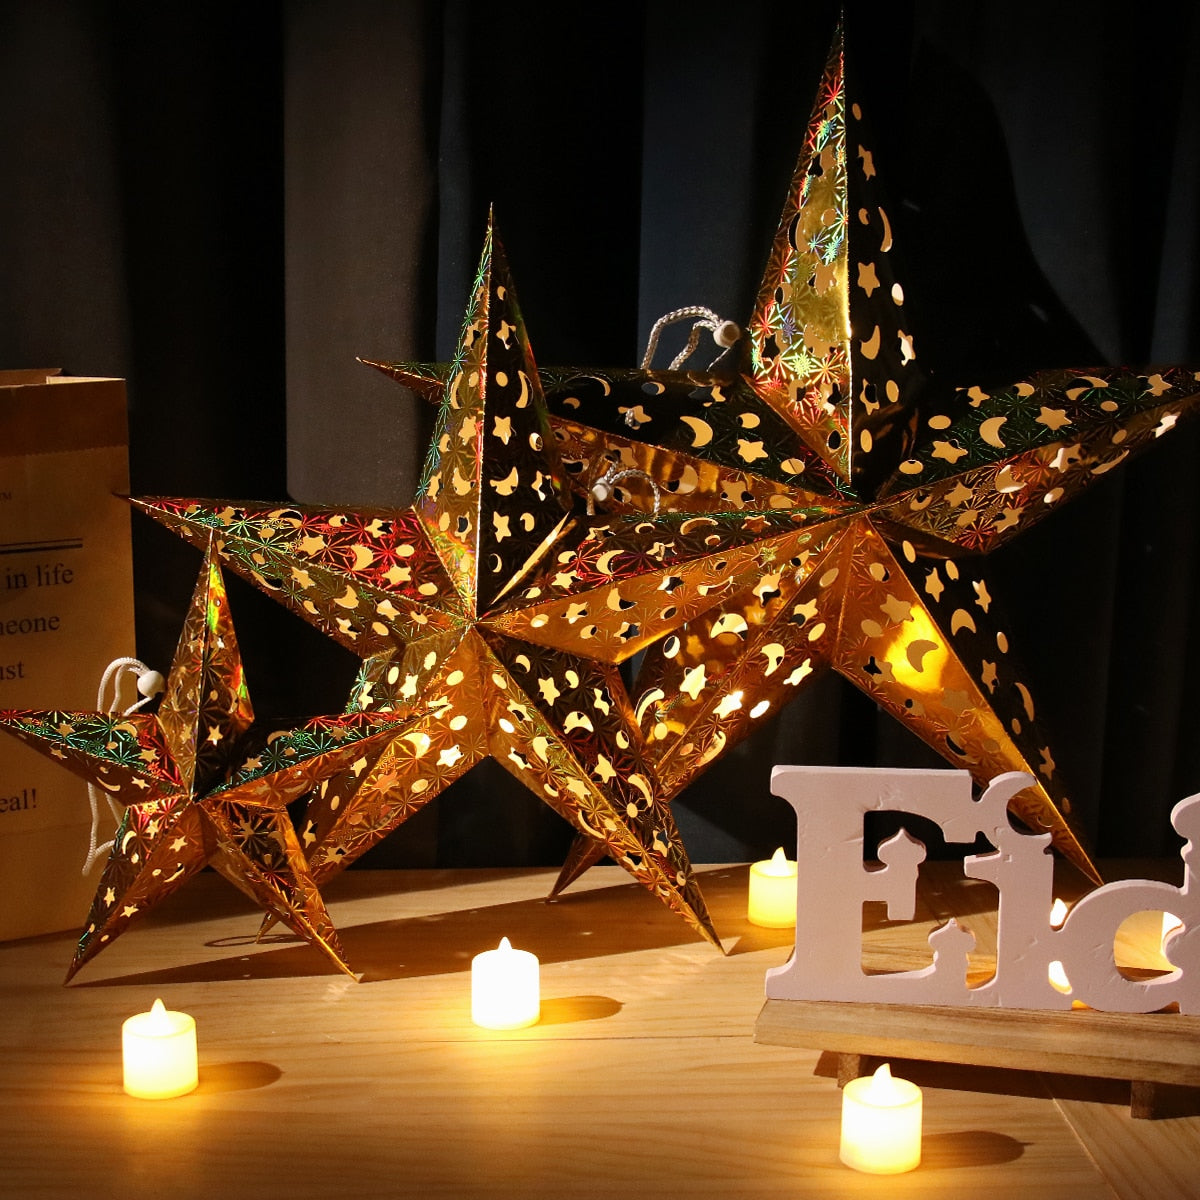 Lanterna de Estrela de Papel Cartão em 3D Pentagrama